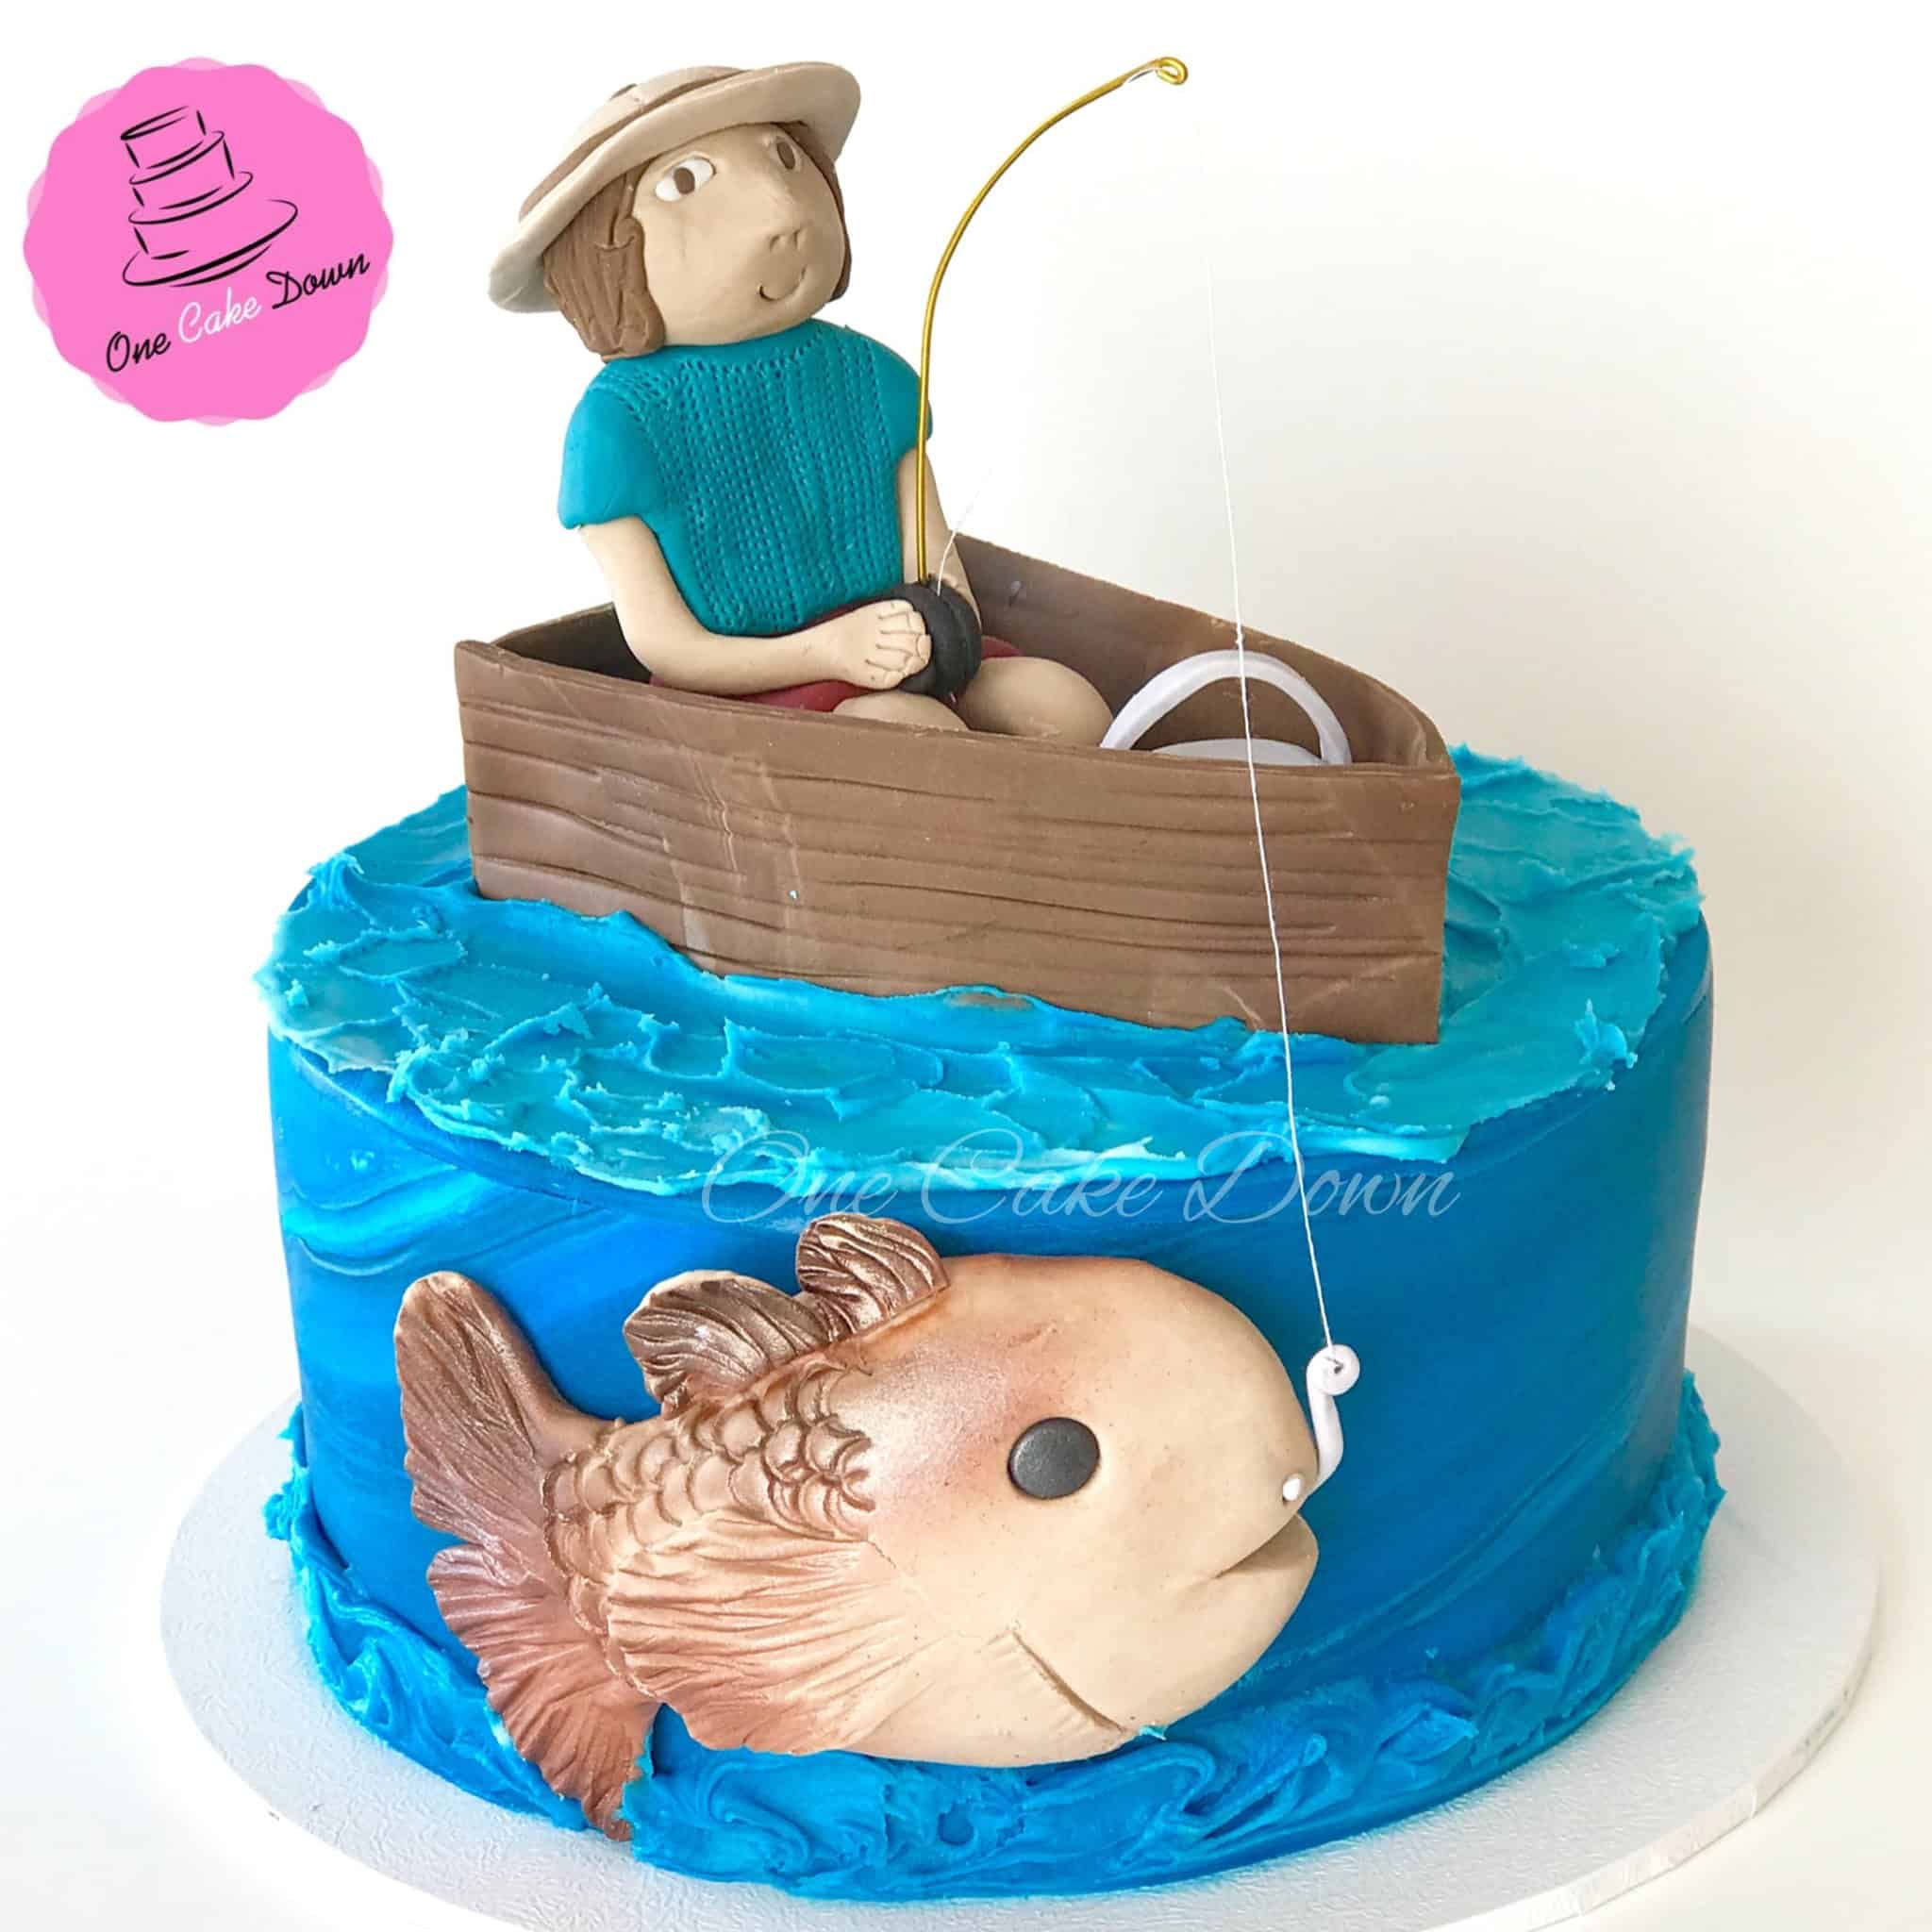 Gone fishing cake | Carp fish cake for the birthday of an av… | Flickr